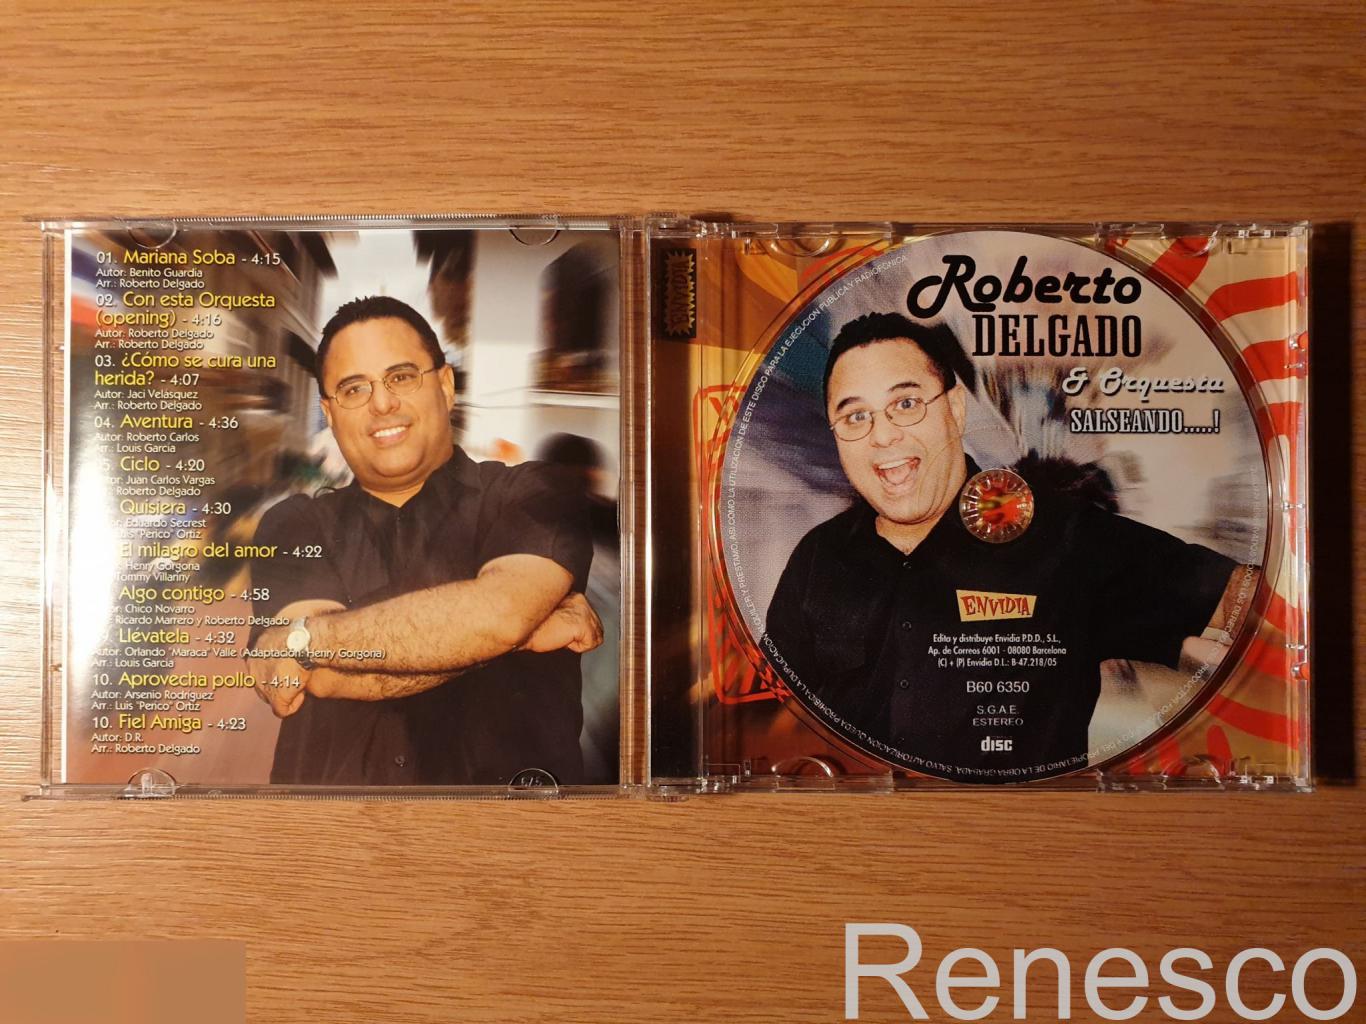 (CD) Roberto Delgado & Orquesta ?– Salseando.....! (2006) (Spain) 2